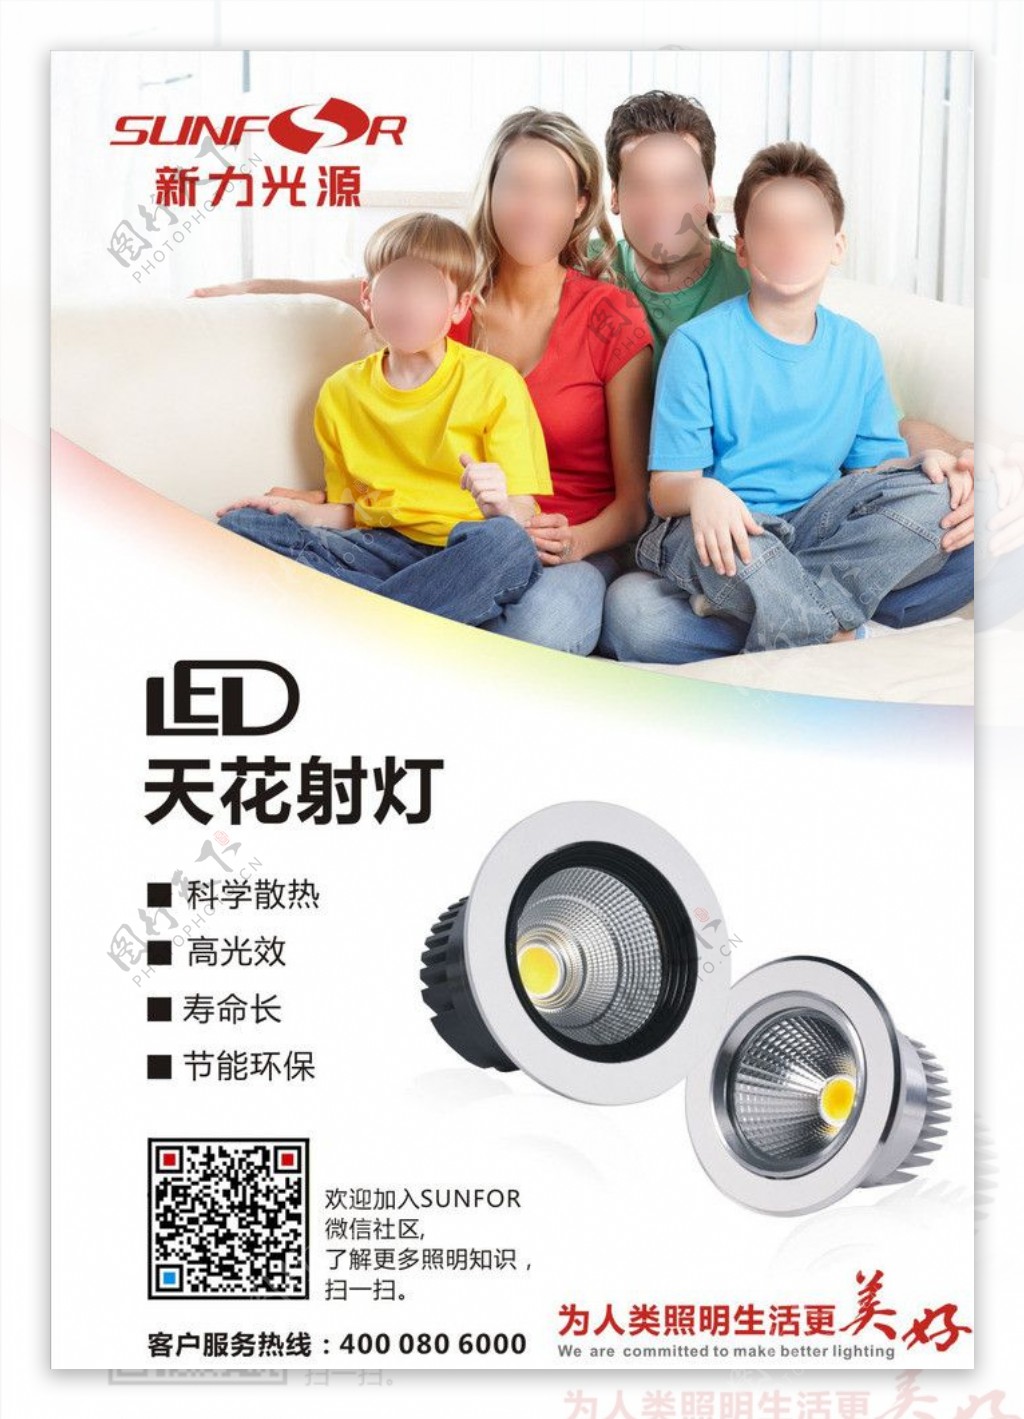 LED射灯宣传海报图片